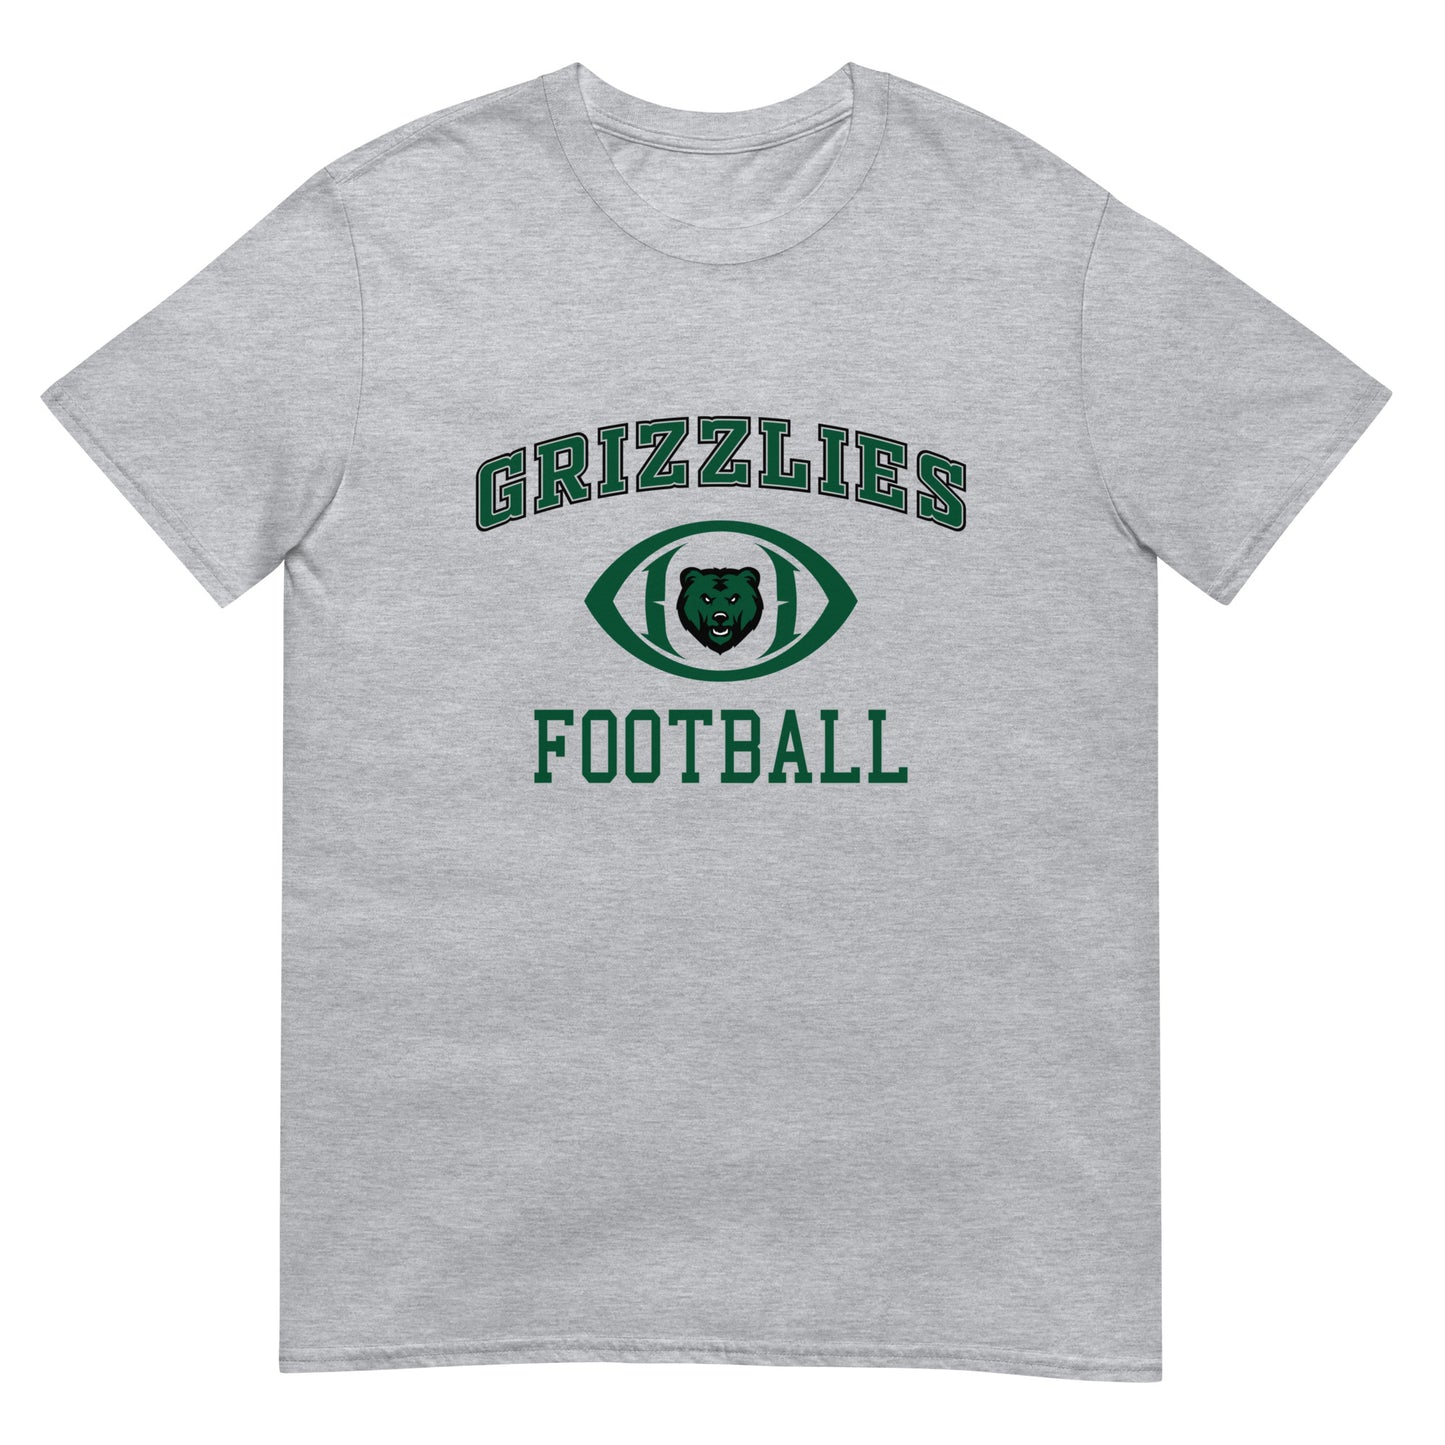 Grizzlies Football Short-Sleeve Unisex T-Shirt